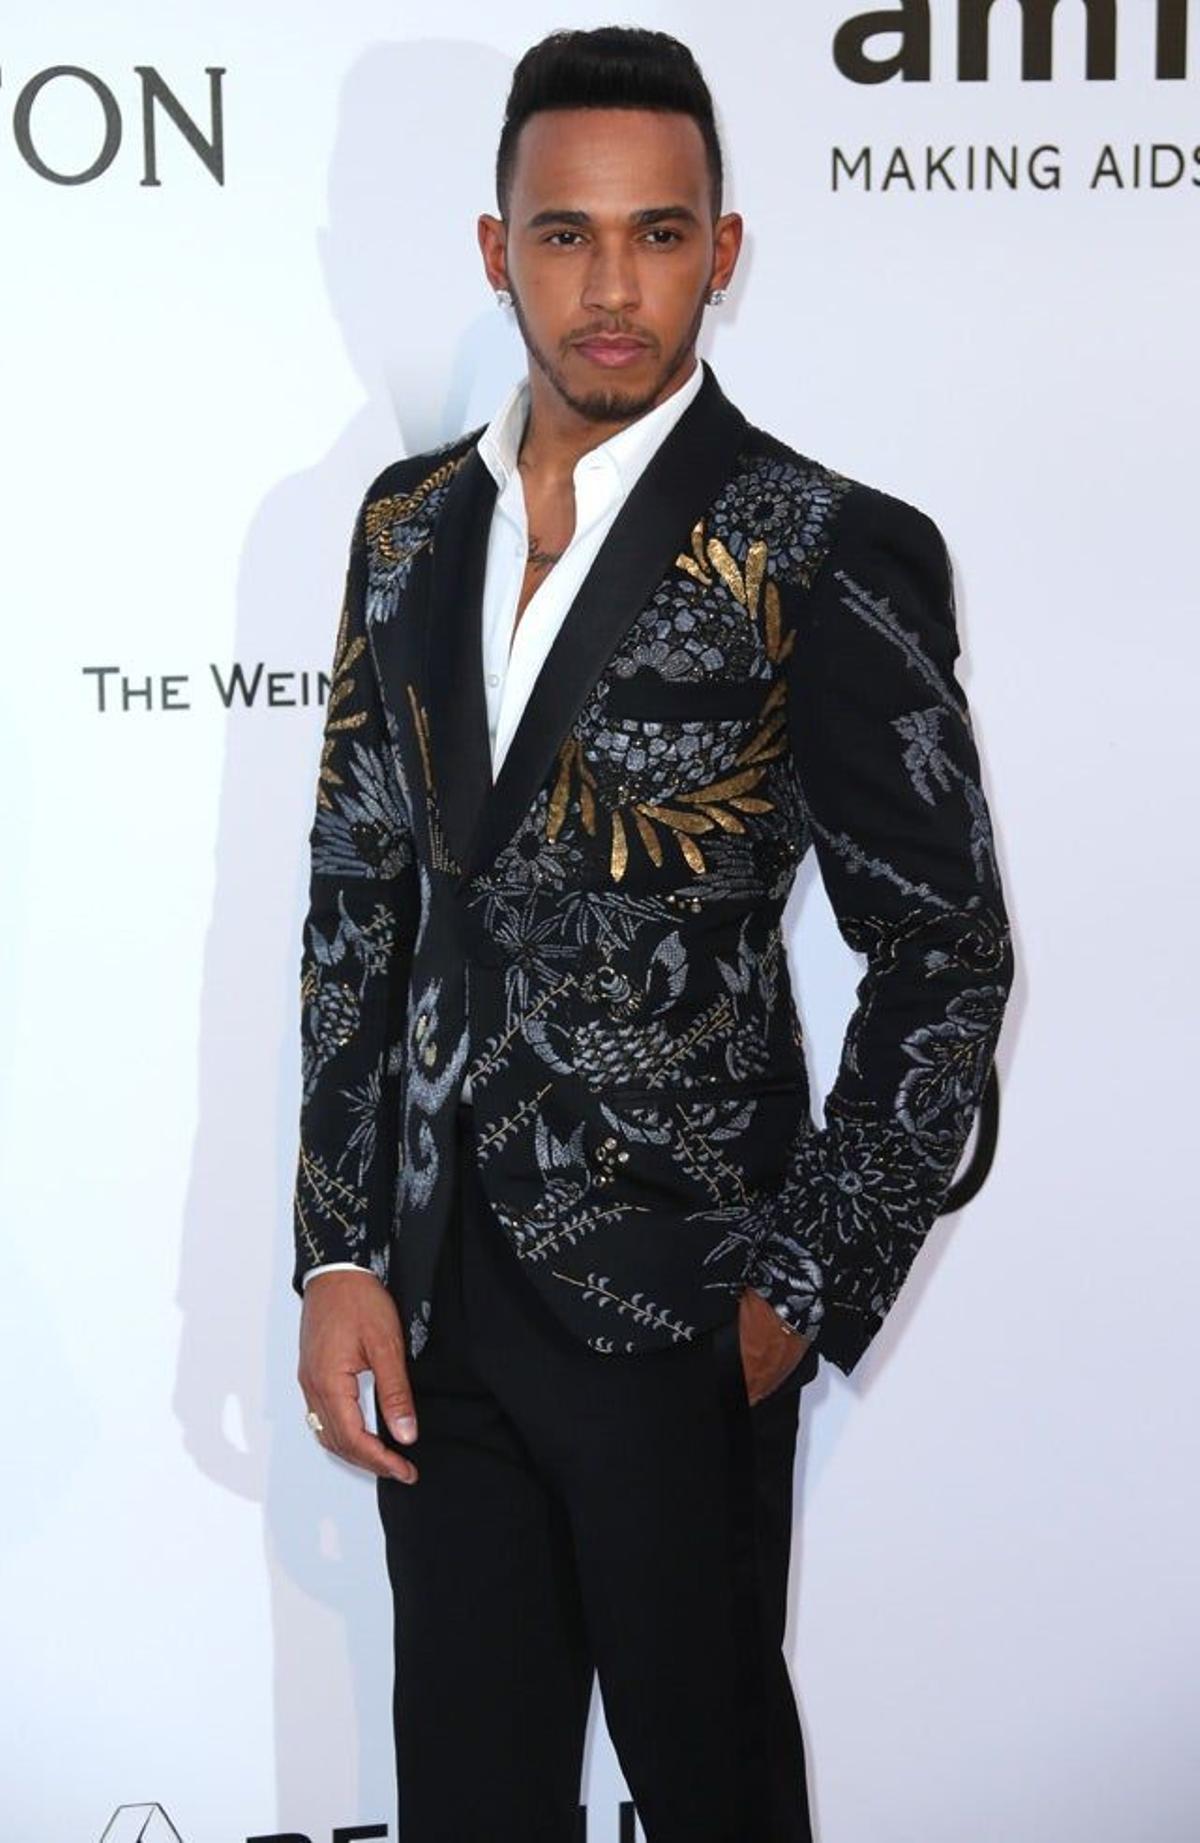 Lewis Hamilton, con chaqueta de PORTS 1961 Menswear, en la gala amfAR de Cannes 2016.